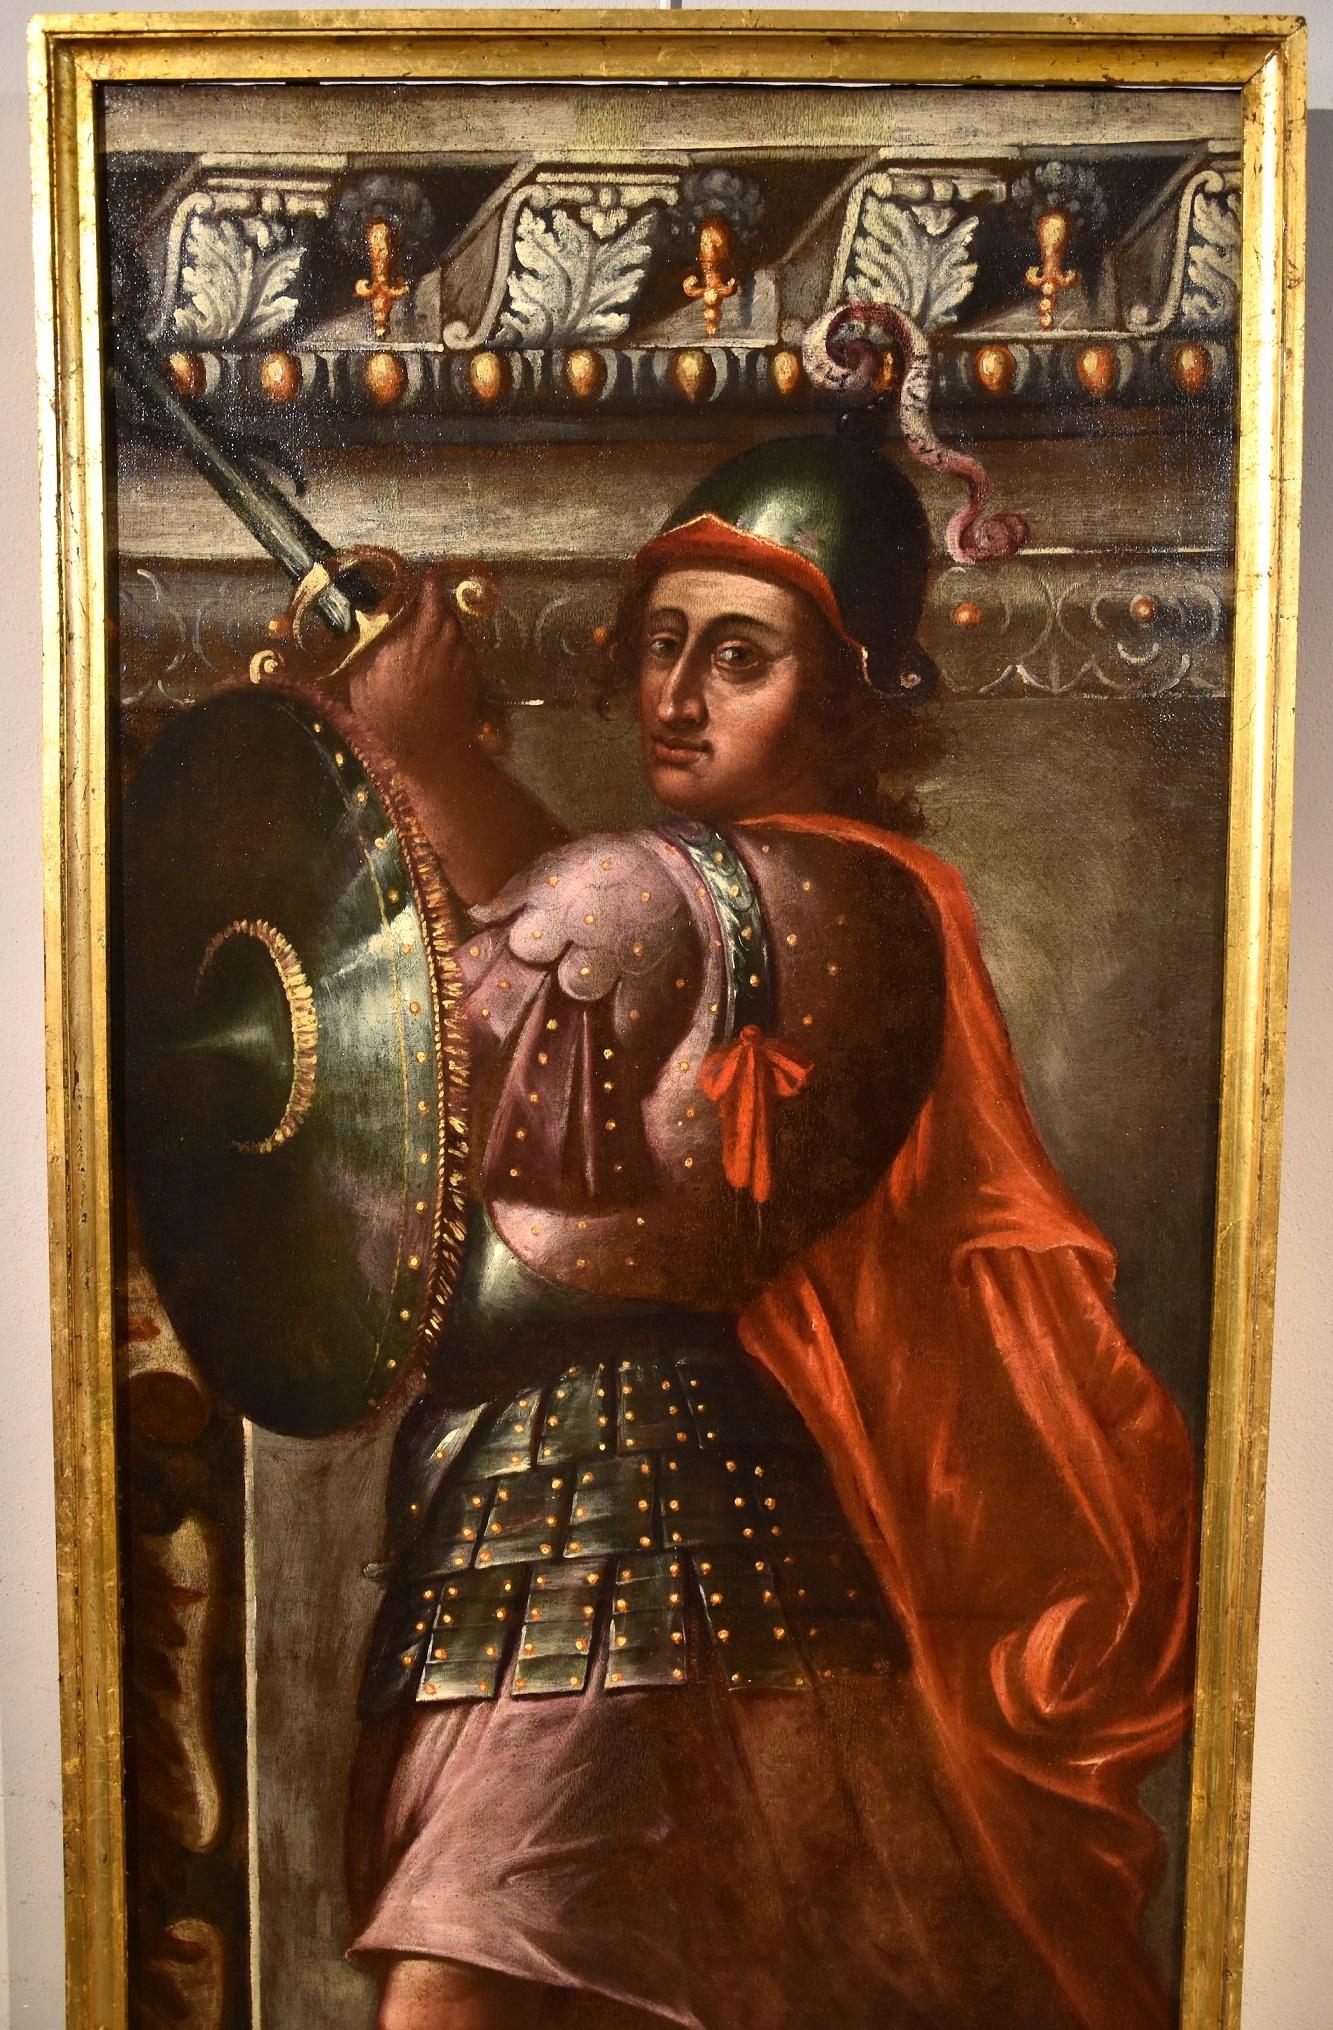 Allegory Man Fortress Stella Gemälde Öl auf Leinwand Alter Meister 16./17. Jahrhundert Kunst (Alte Meister), Painting, von Giacomo Stella (Brescia 1545 - Rome 1630)